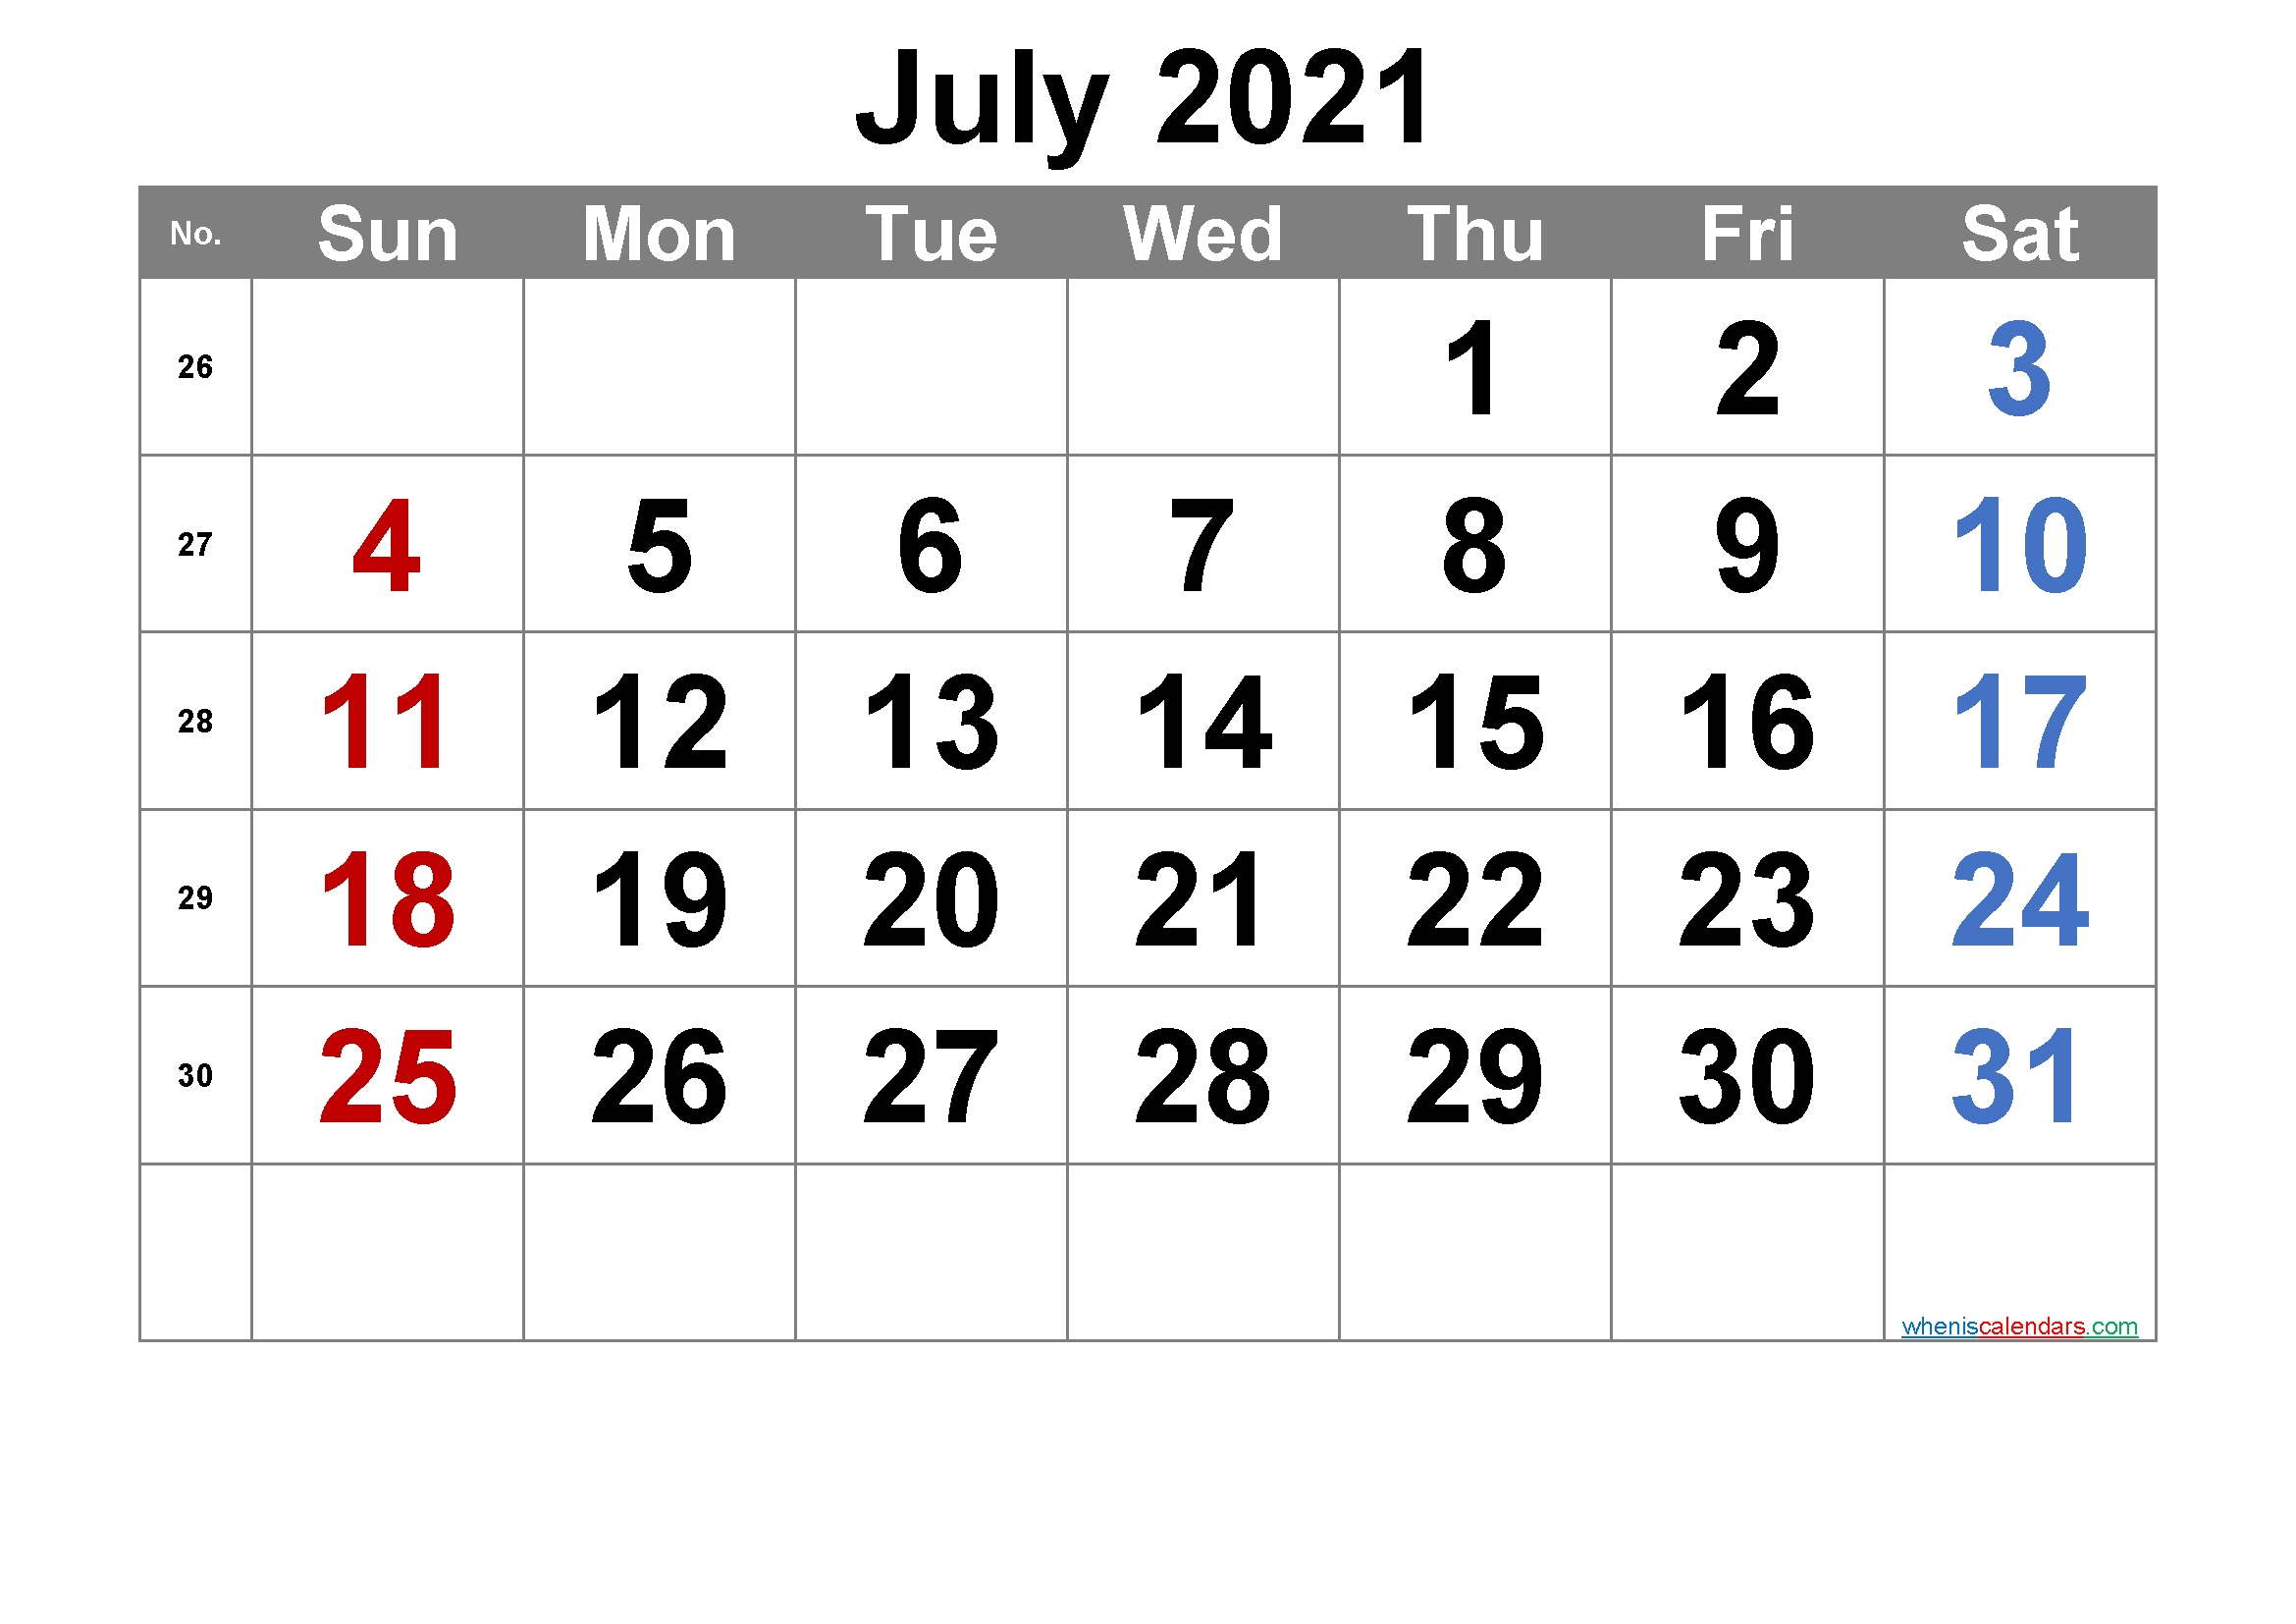 June 2021 Printable Calendar With Week Numbers - 6 Templates | Free Printable 2020 Calendar With July 2020 To July 2021 Calendar